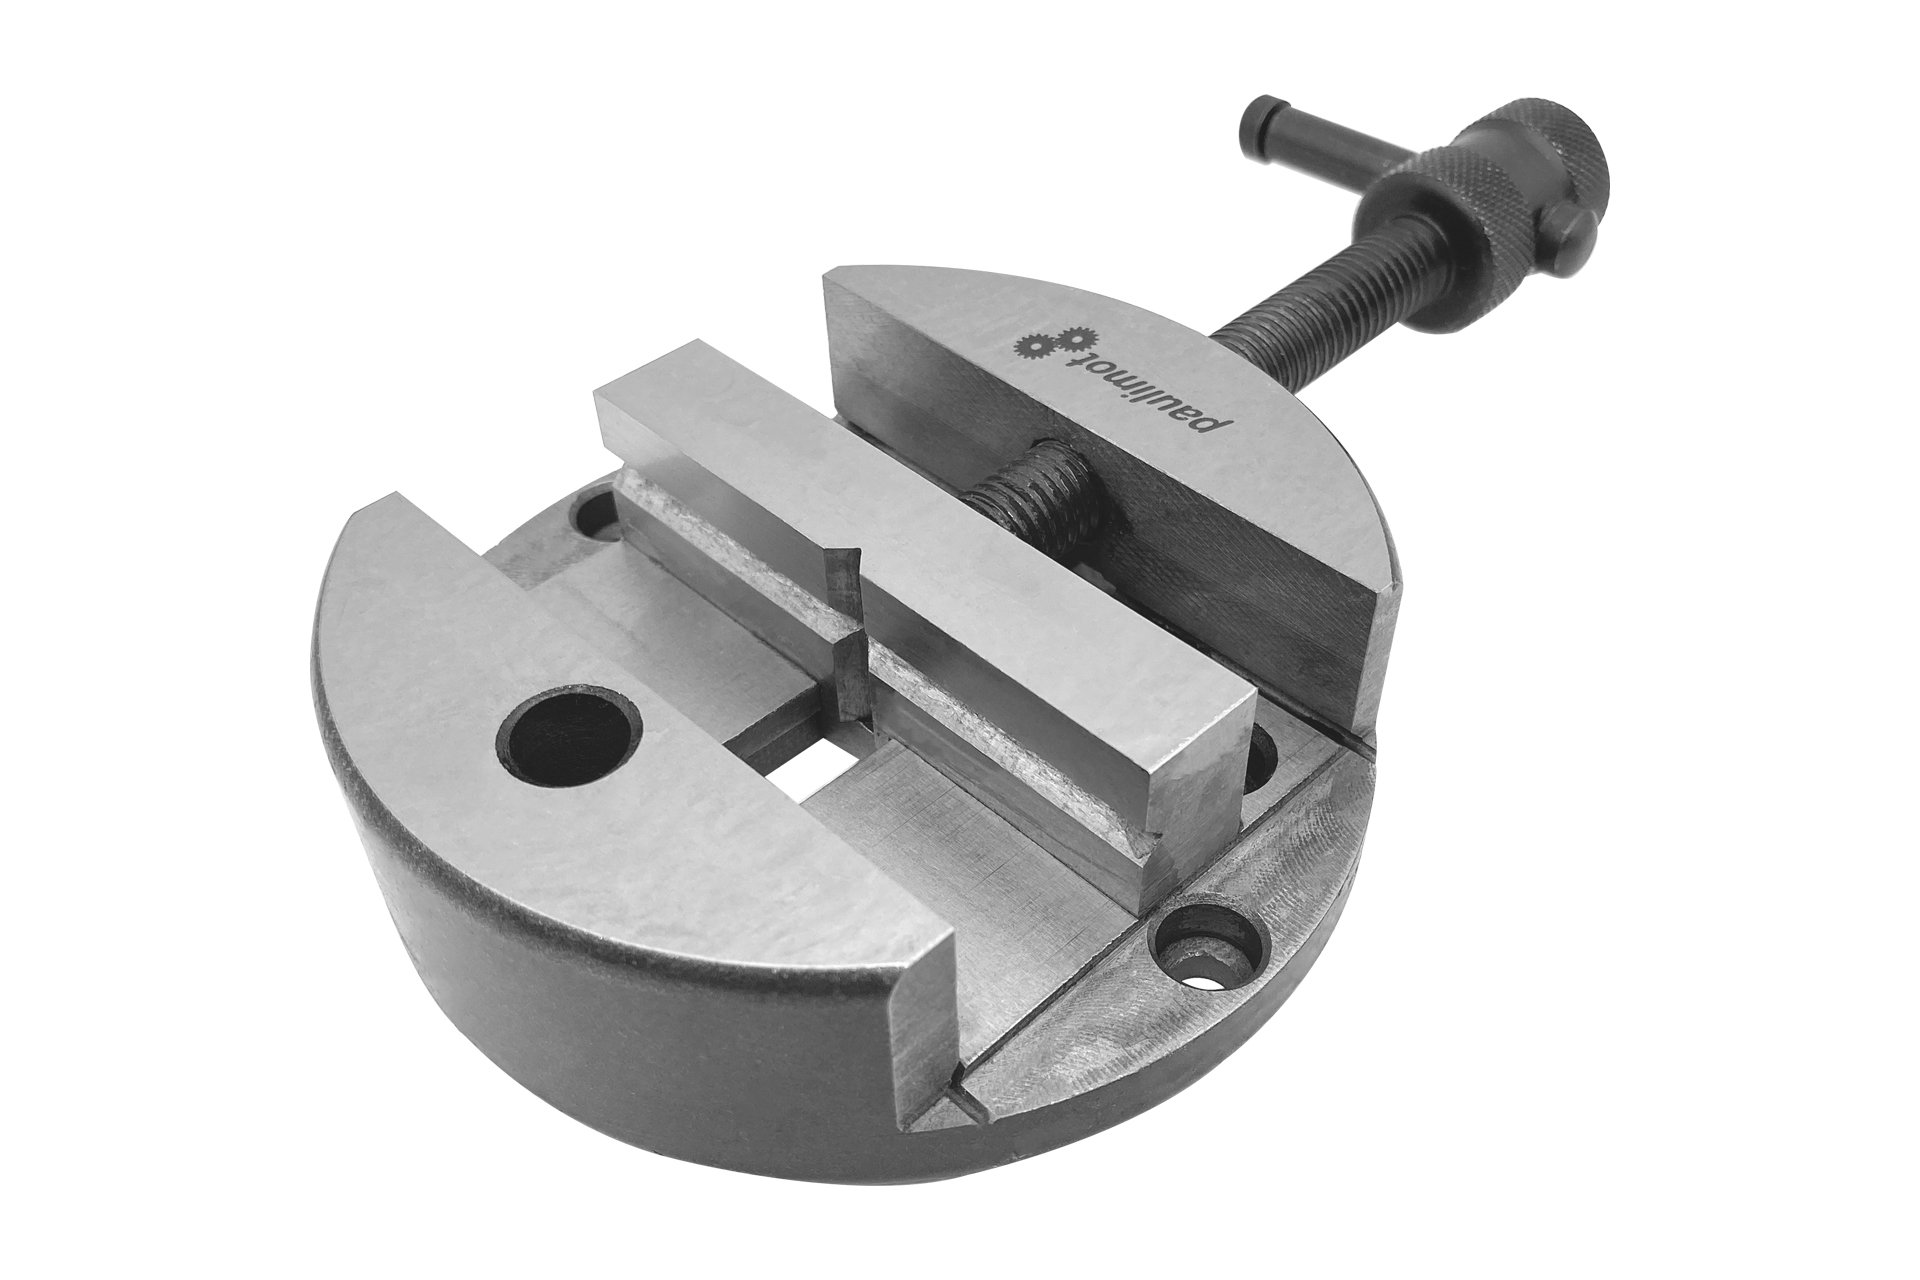 Schraubstock für Teilapparate Ø 100 mm, Backenbreite 80 mm